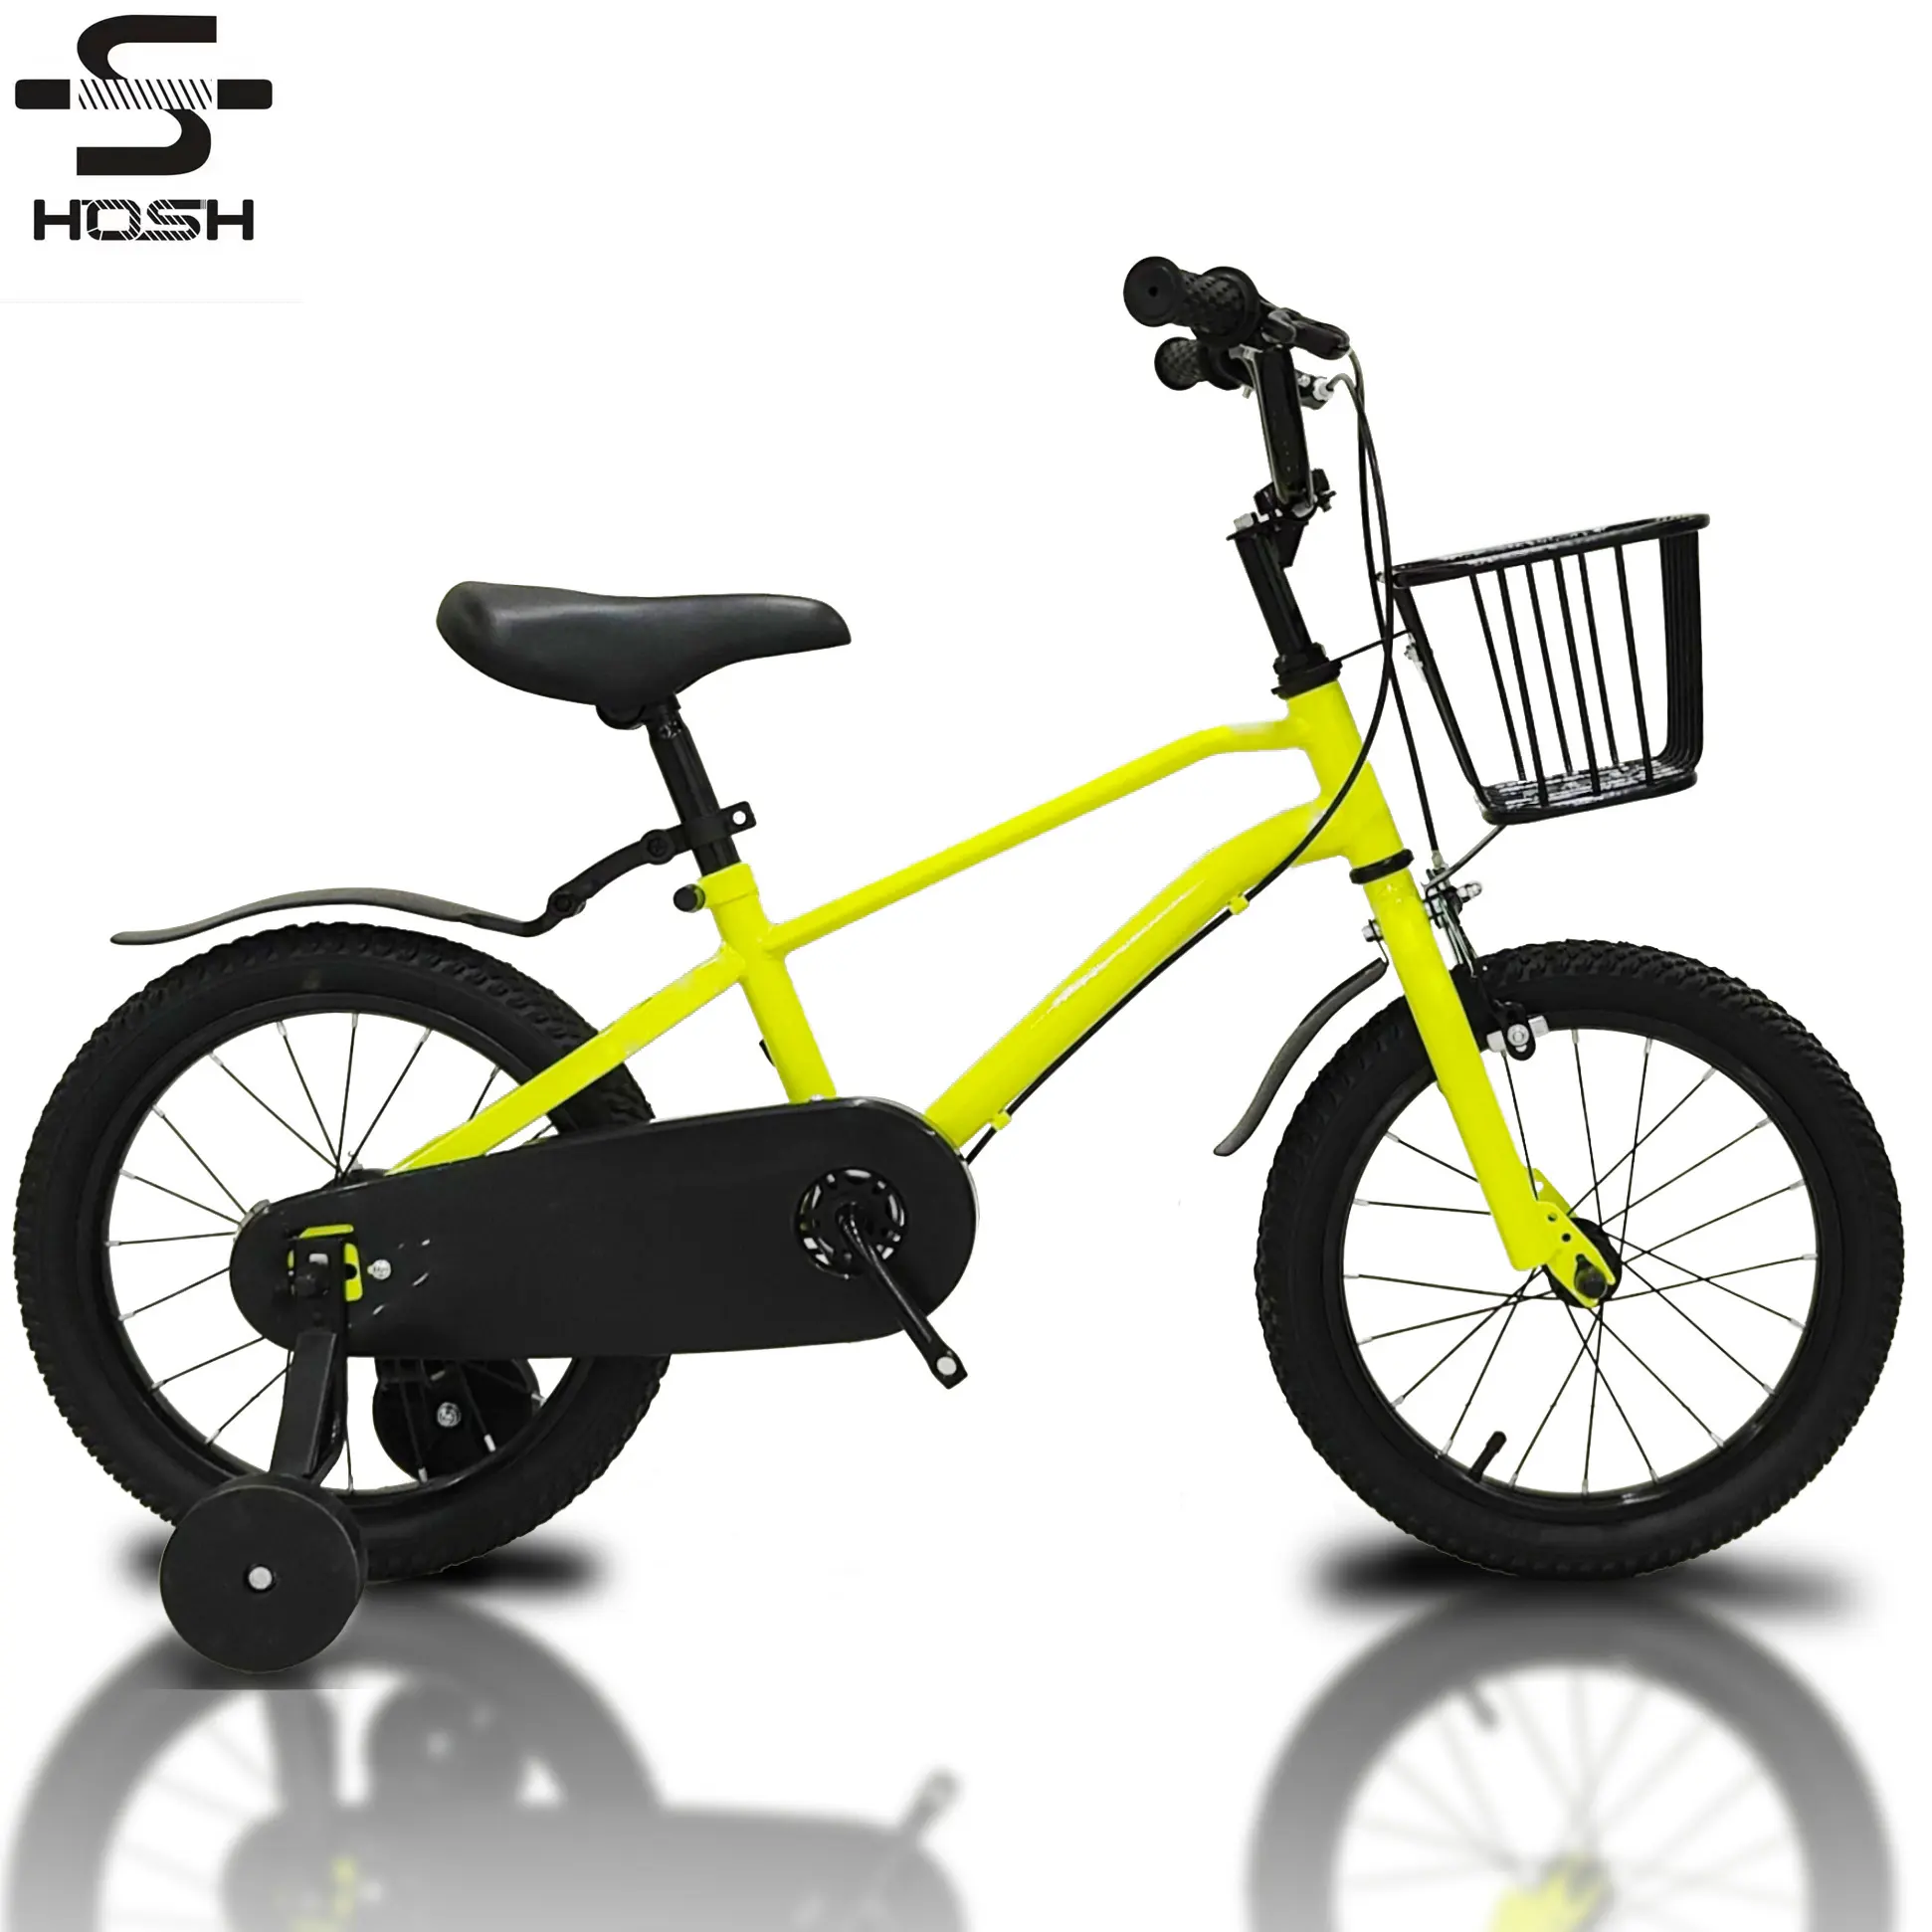 e-bike hosh Einfachgang buntes Stahlrahmen-Kinderfahrrad Fahrrad für Kinder 2 3 4 5 jahre alt